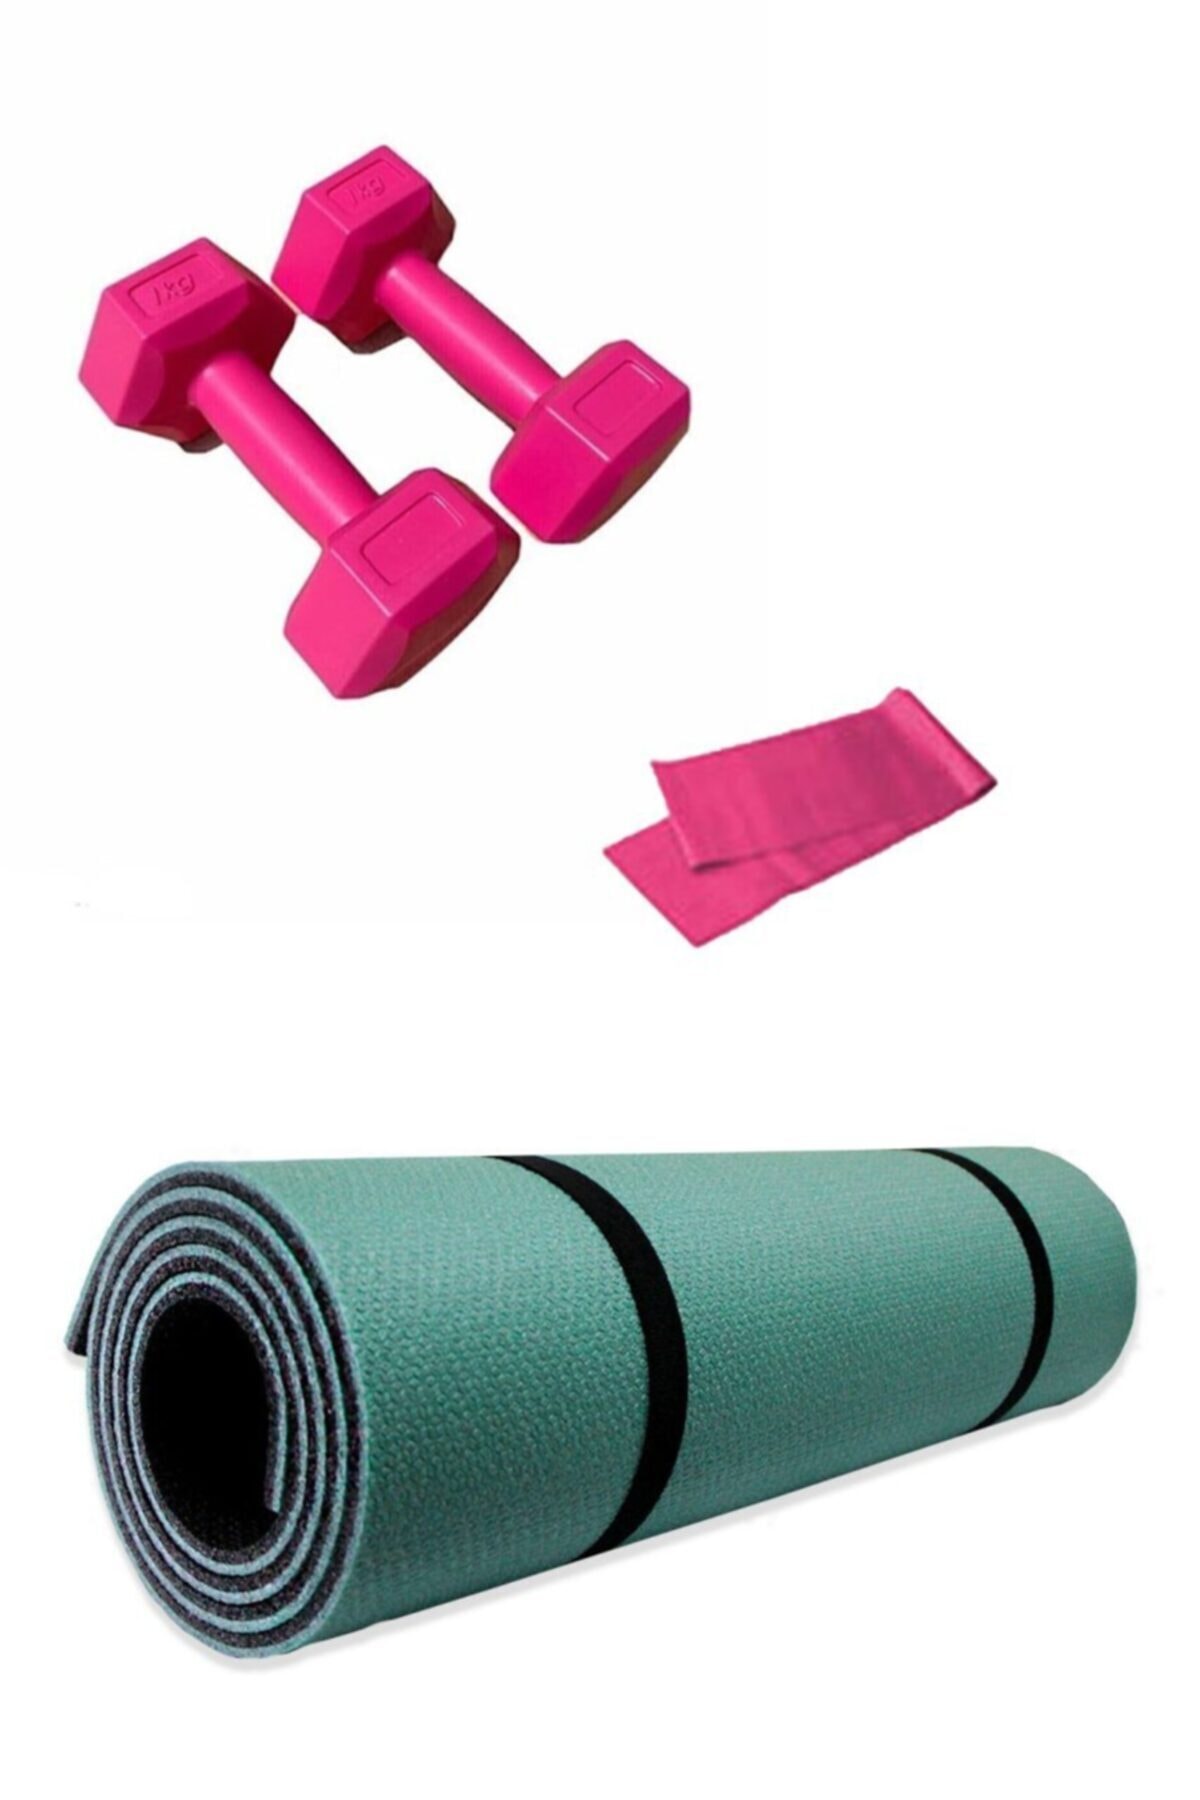 Tayzon Haki 8mm Pilates Ve Yoga Matı +1 Kg Demir Tozlu Dambıl (2 Adet ) + Direnç Bandı